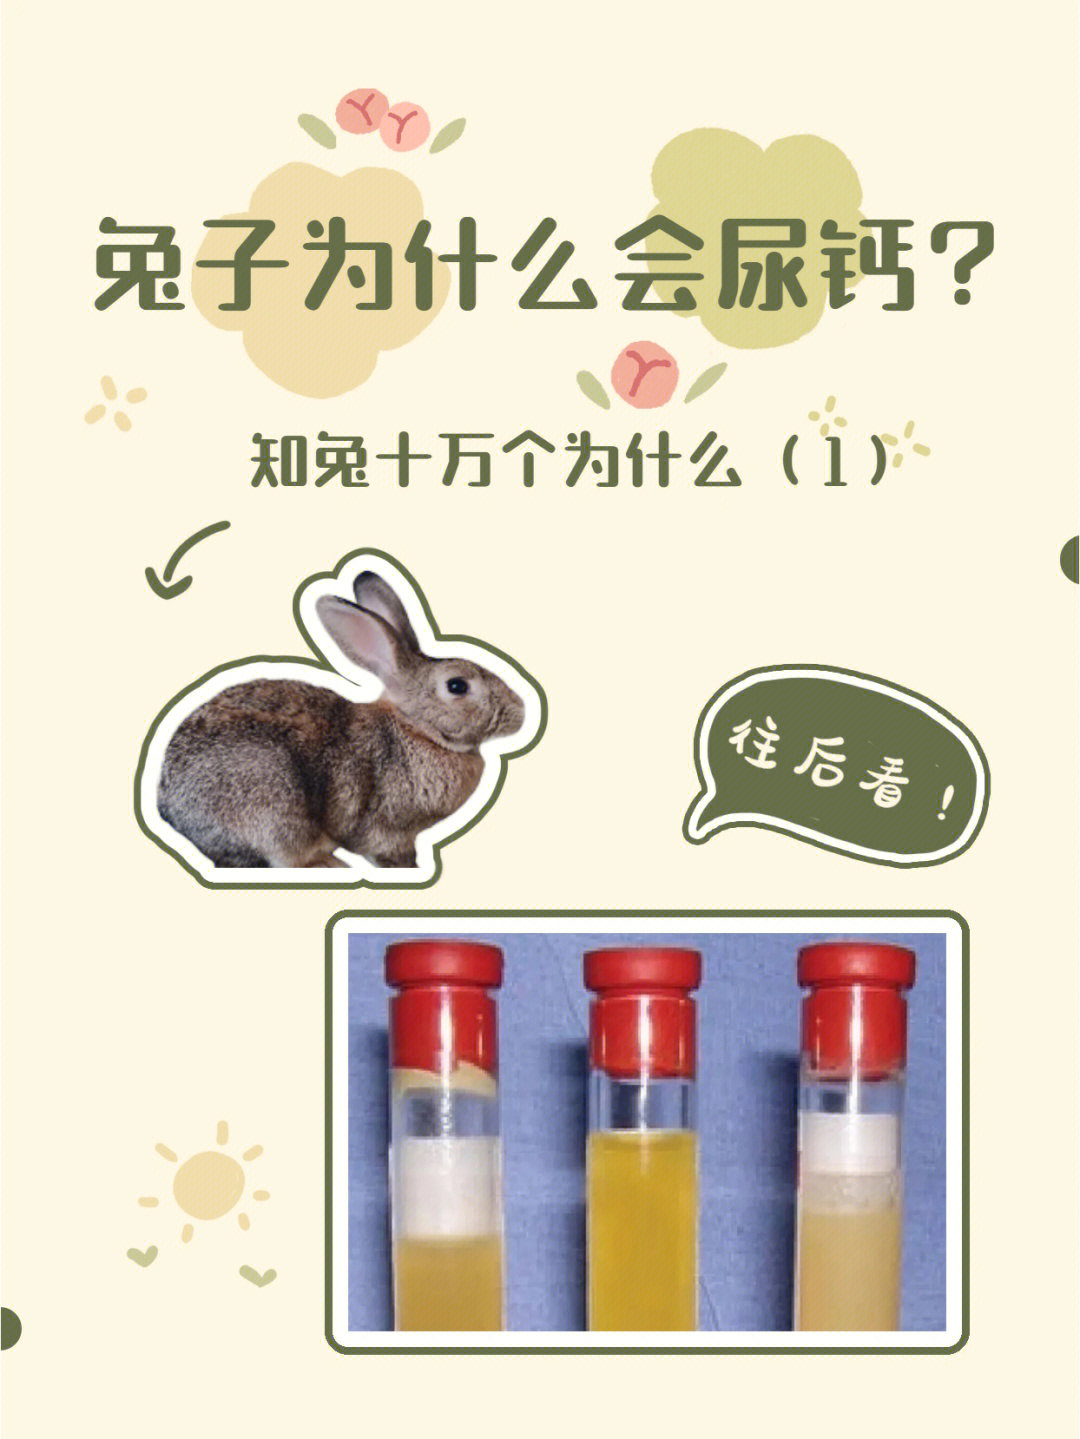 当你看到兔子的尿液很混浊时,你是不是很担心?